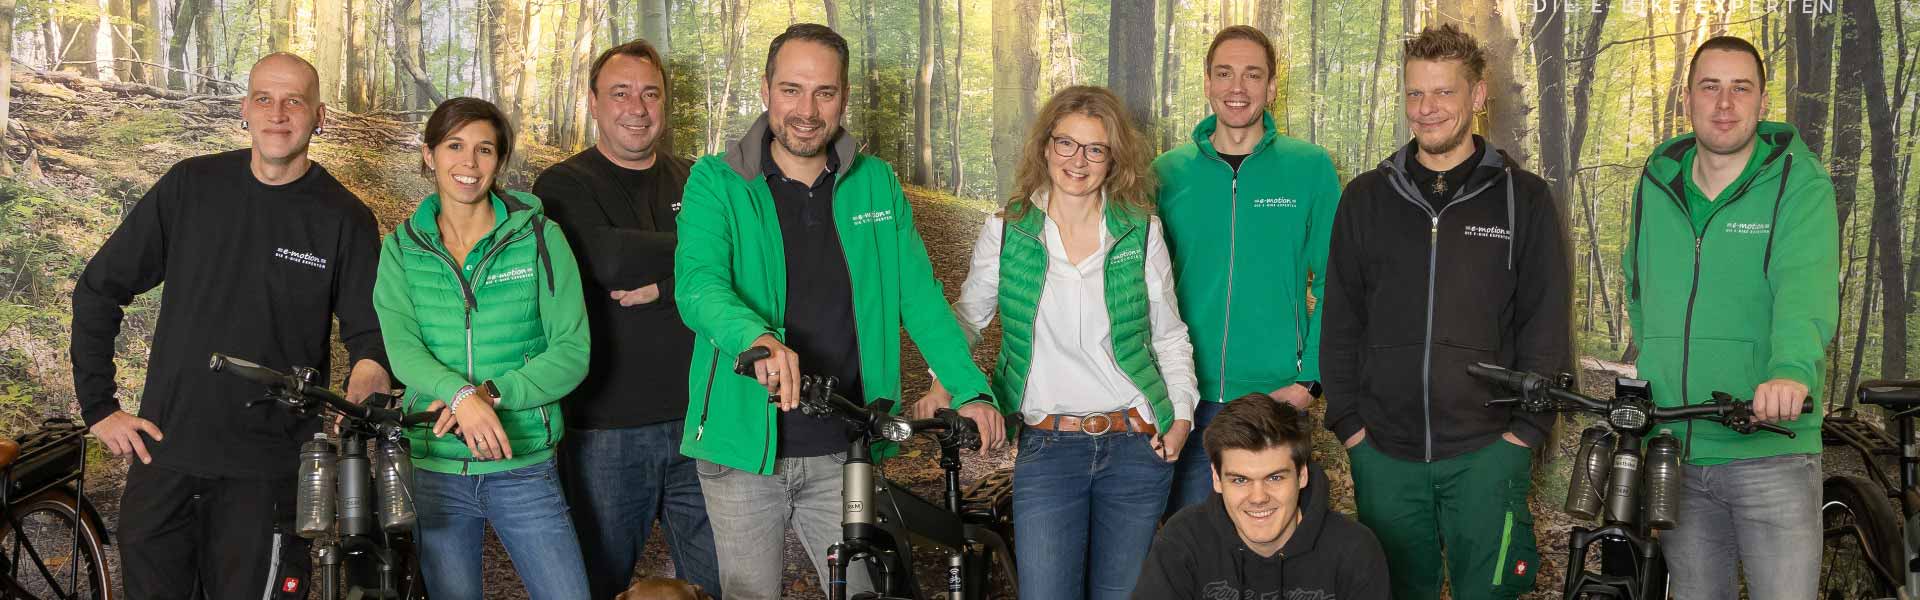 Das Team der e-motion e-Bike Welt Norheide